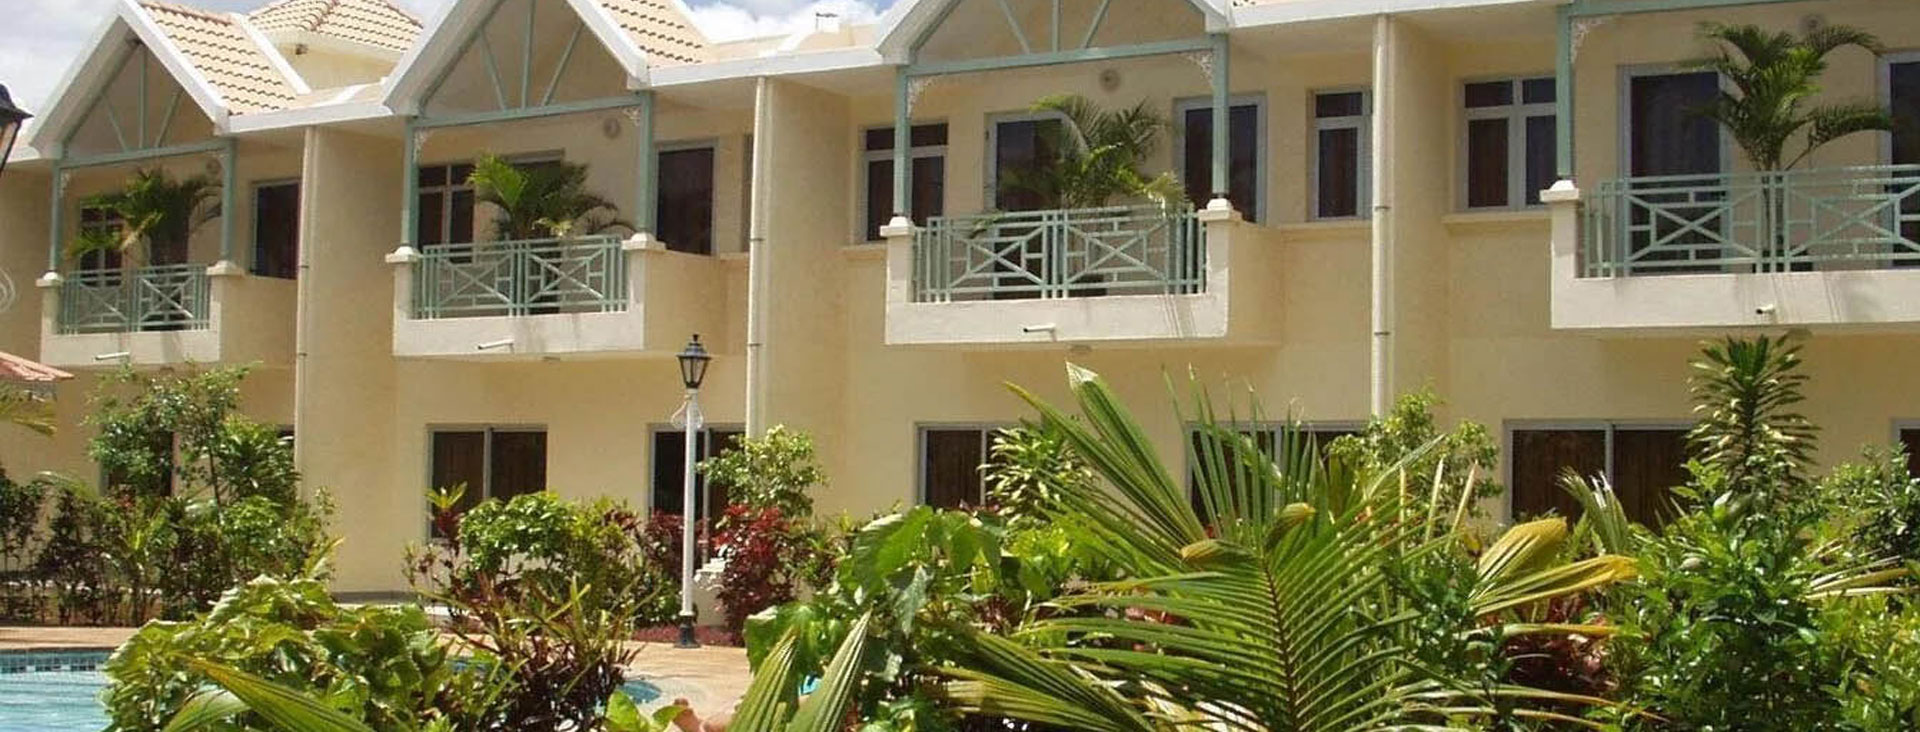 Sandy Cove Villa Duplex apartments 